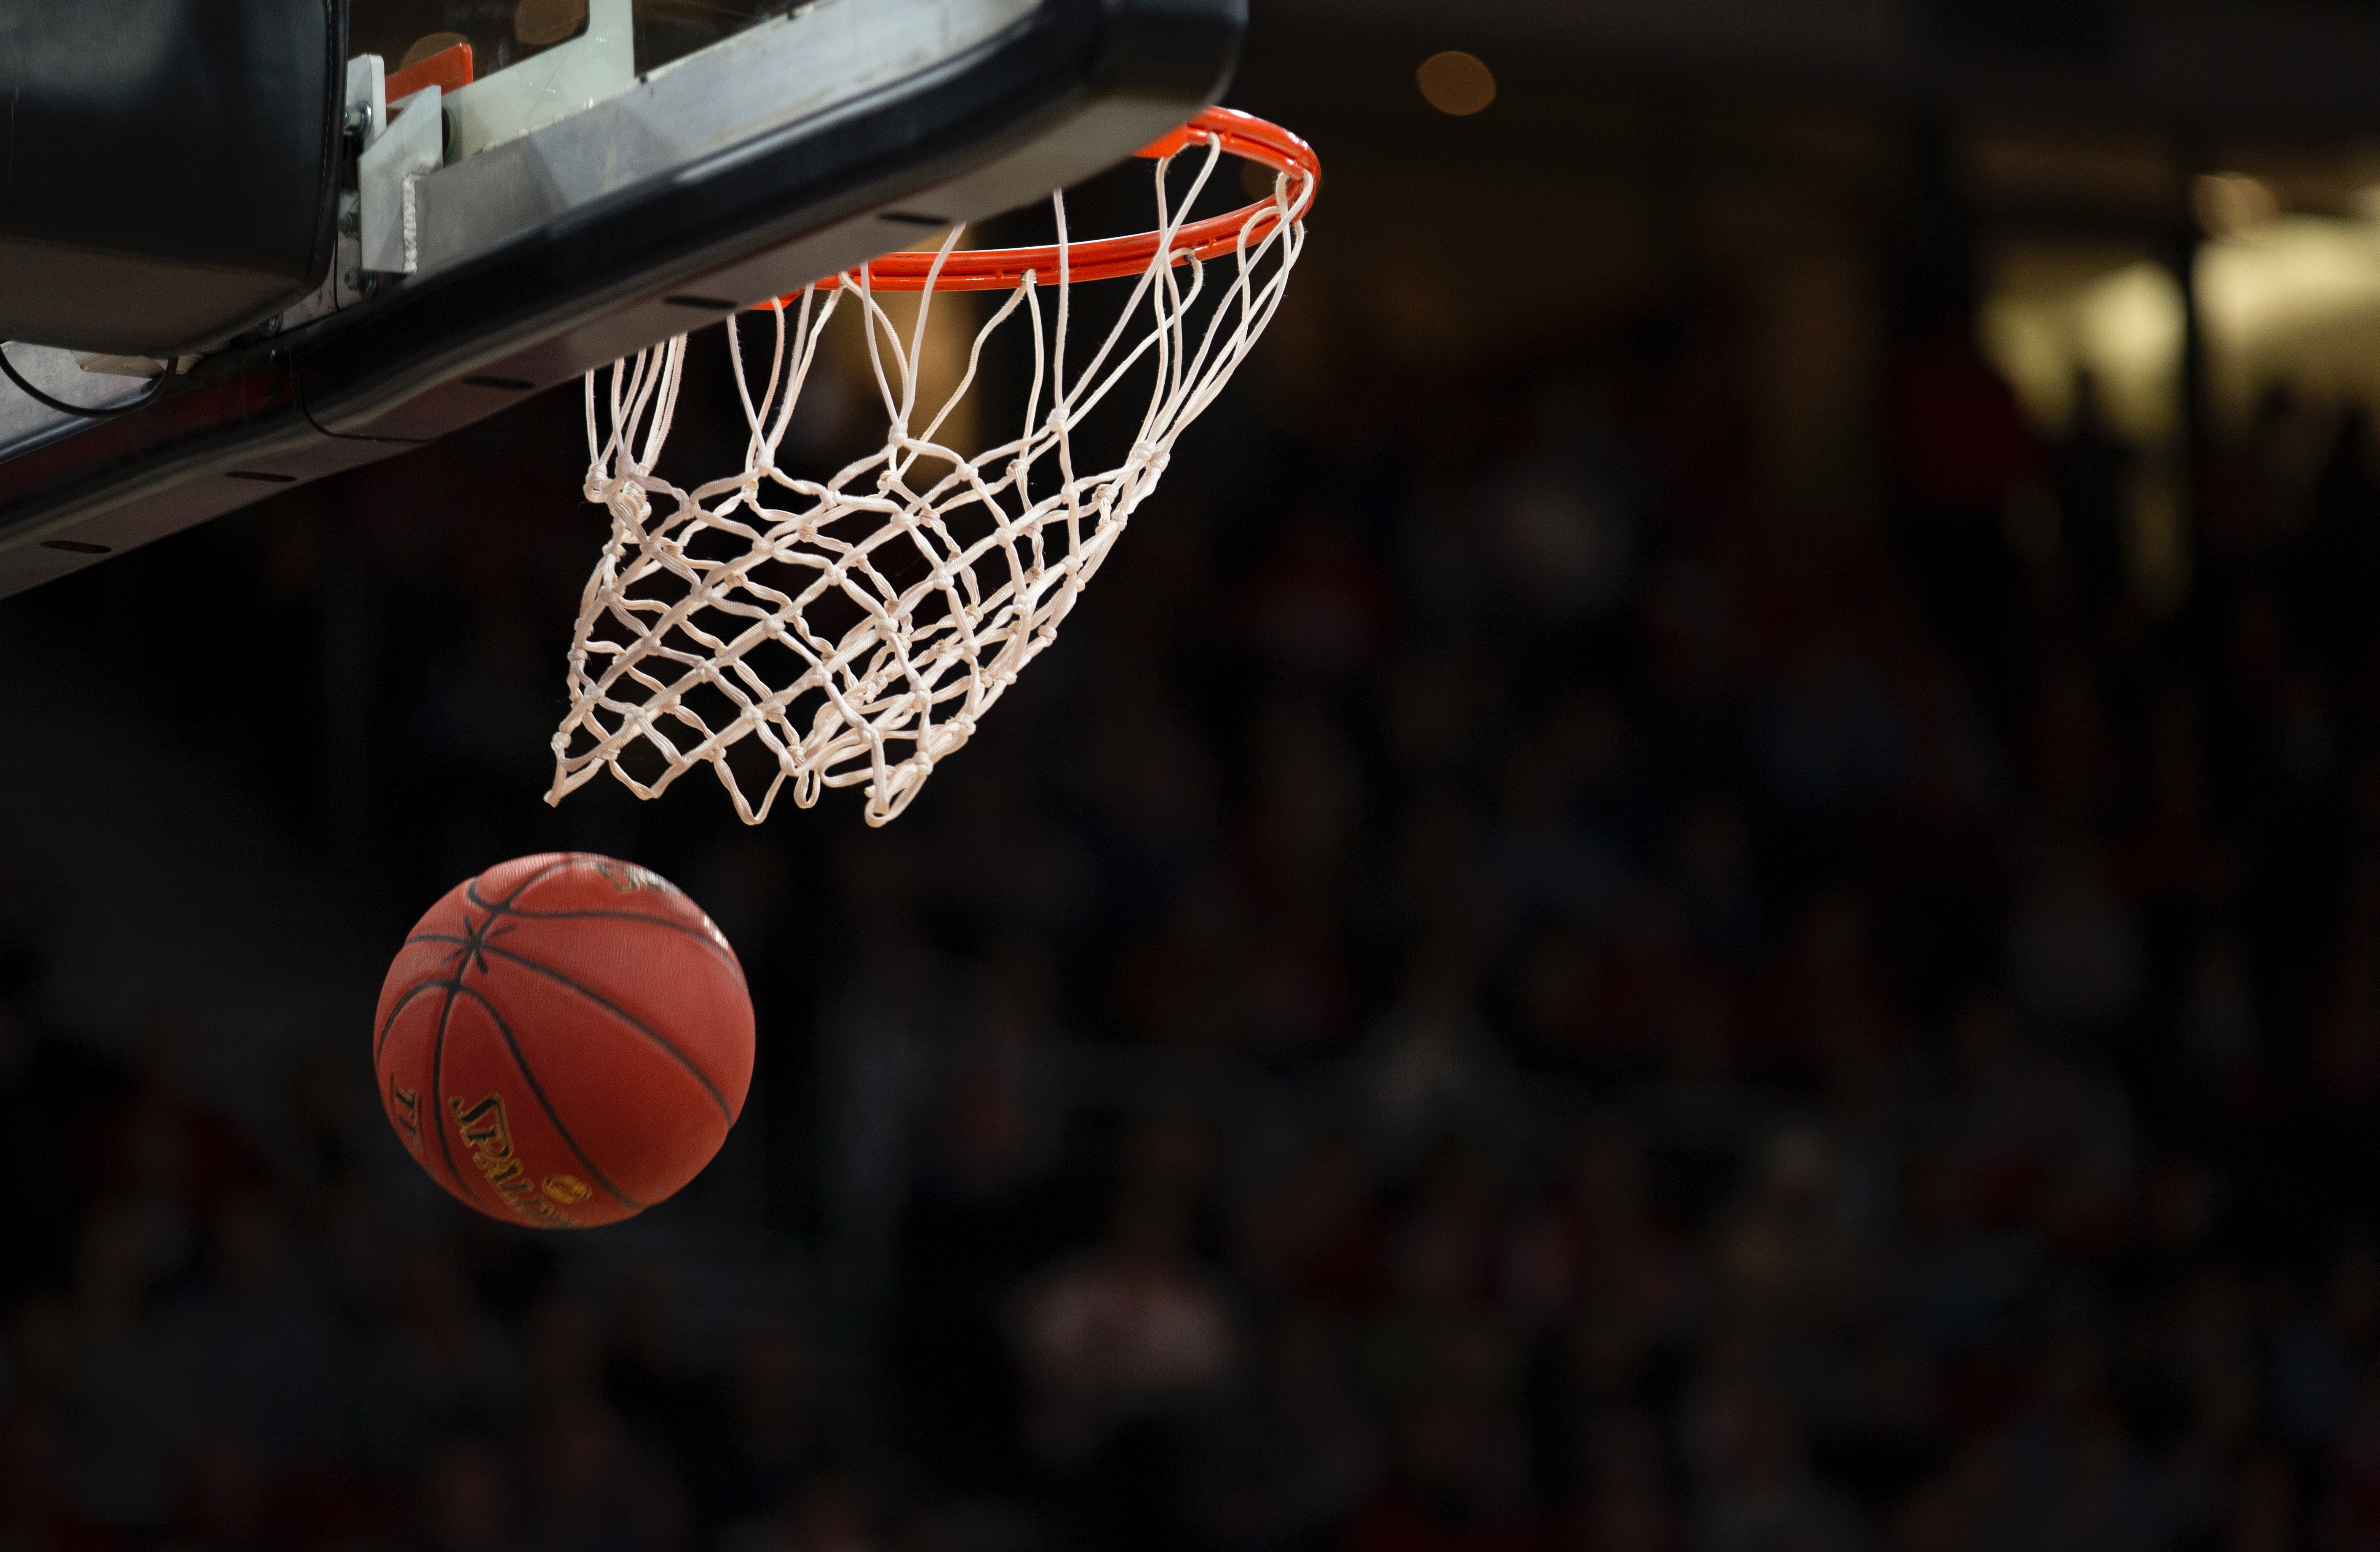 A basketball falls through the net of a basketball hoop